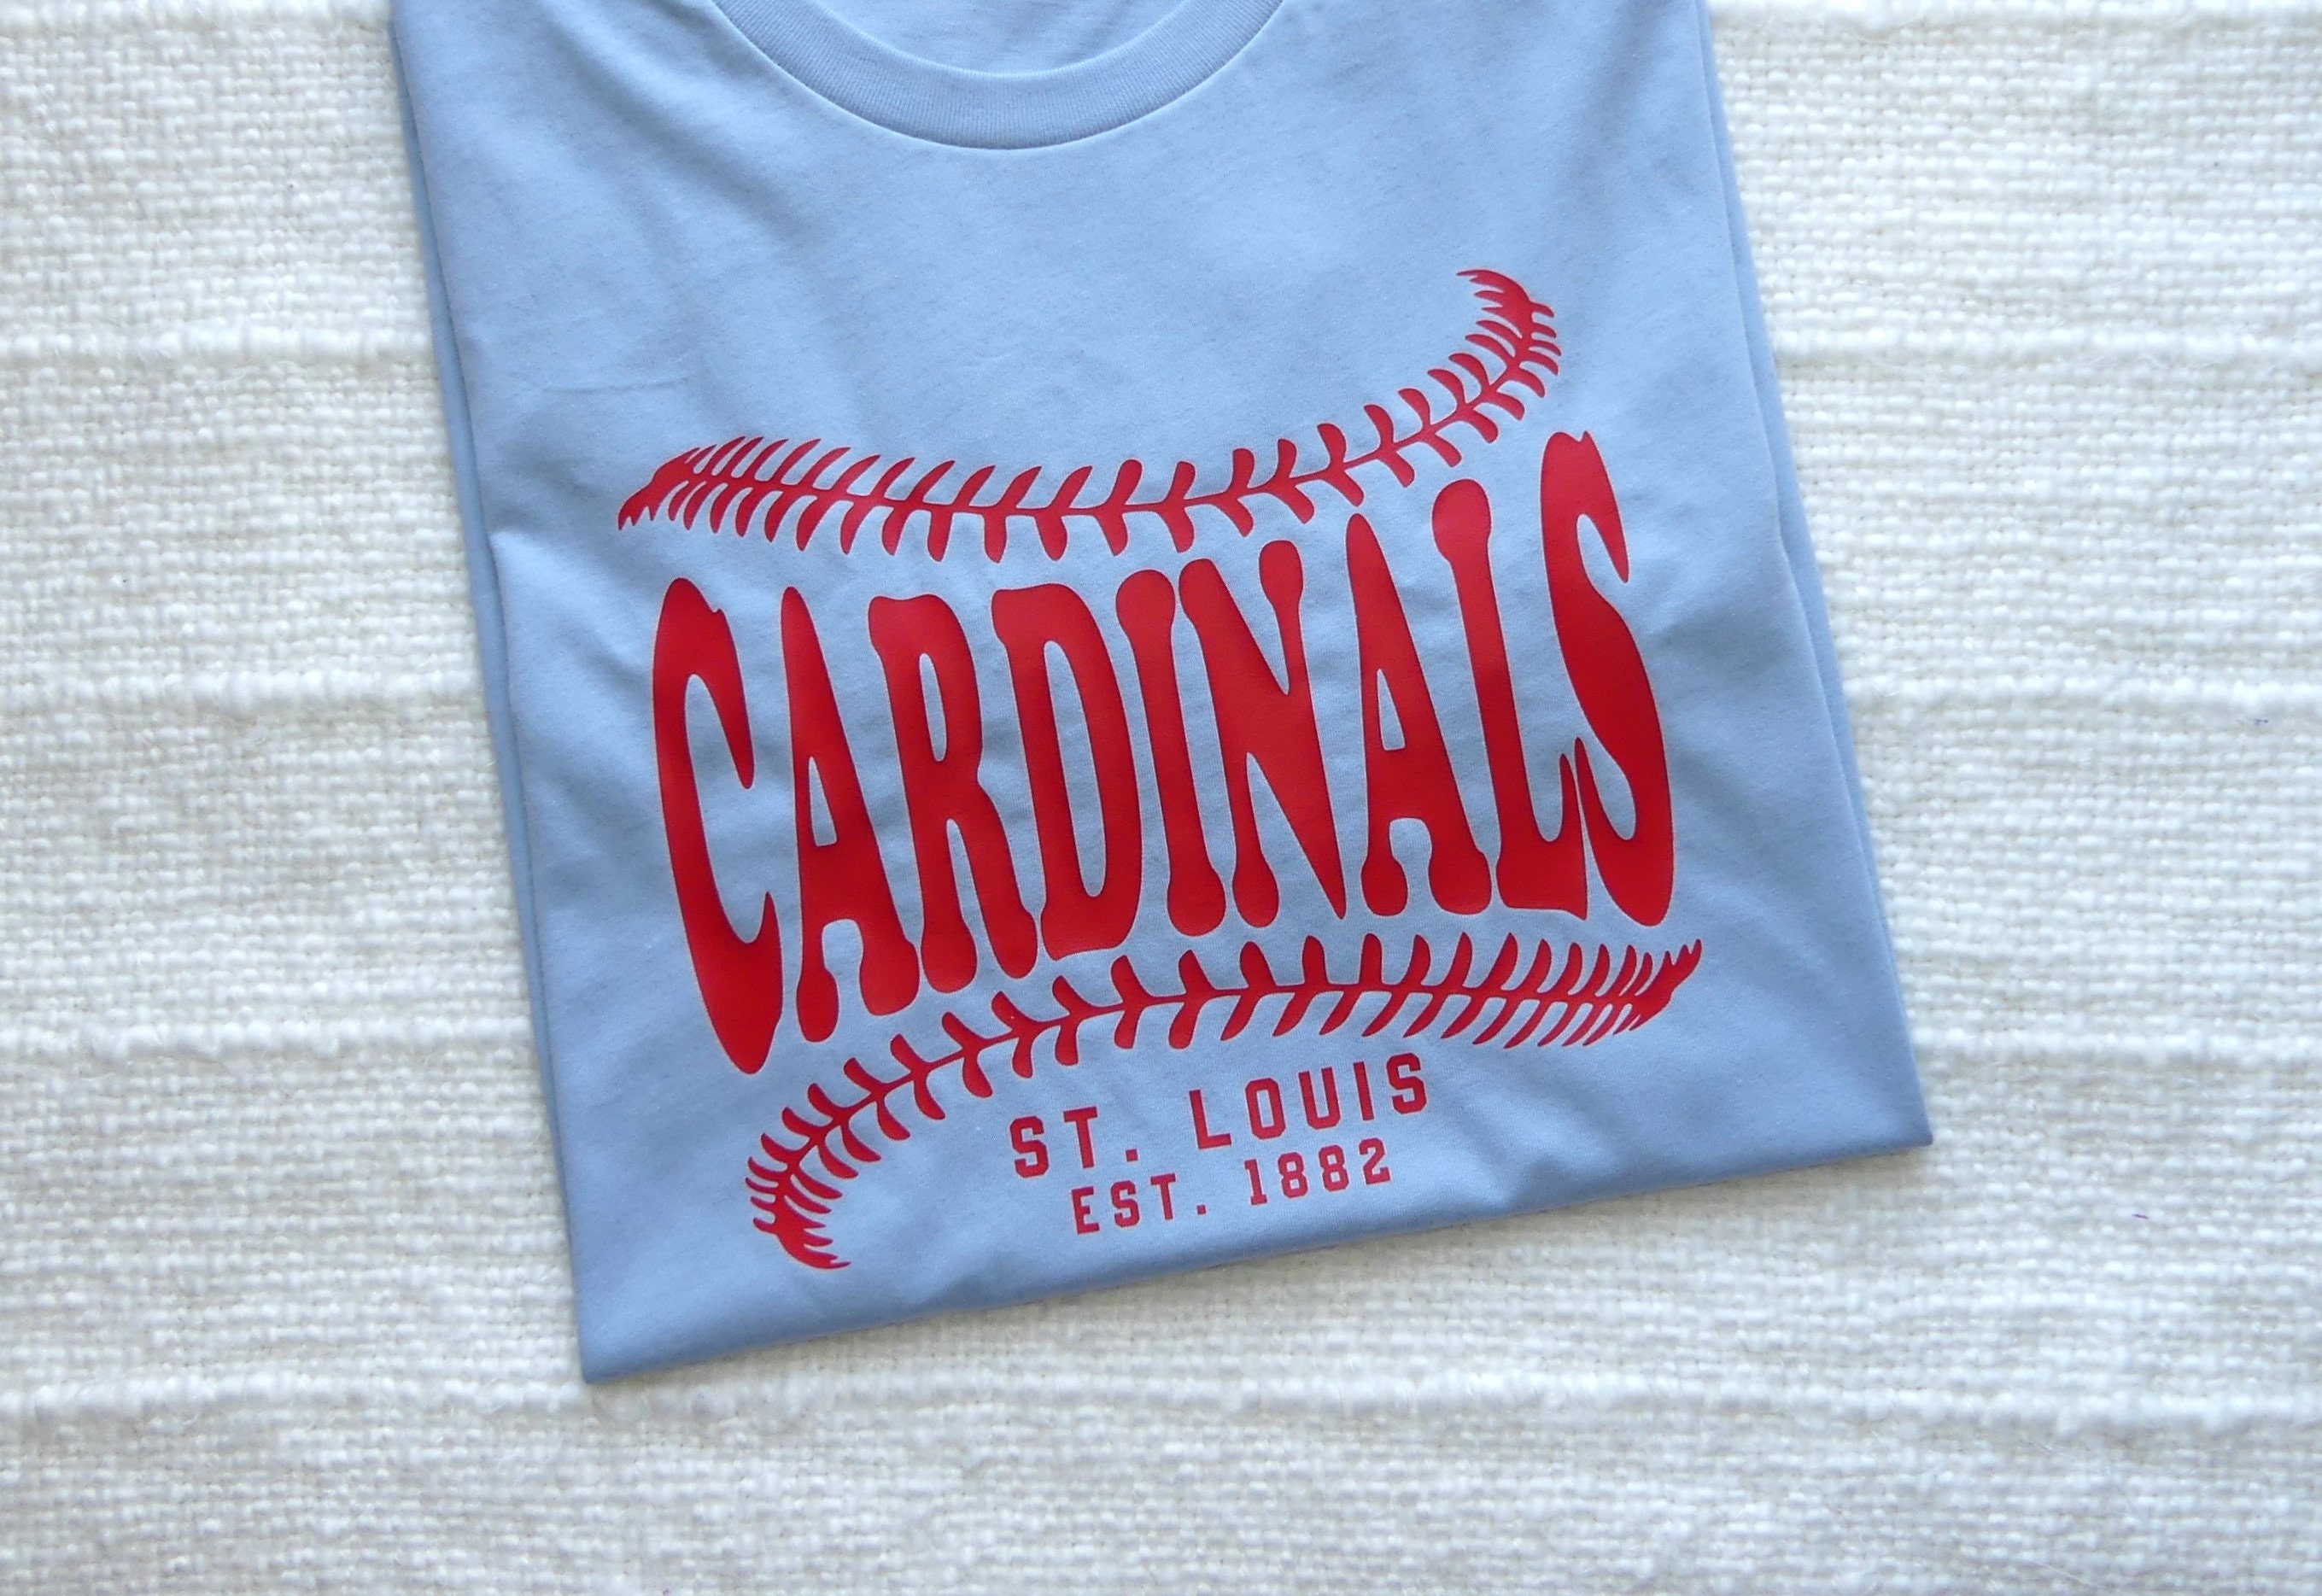 St Louis Cardinals Dog Jersey - Medium